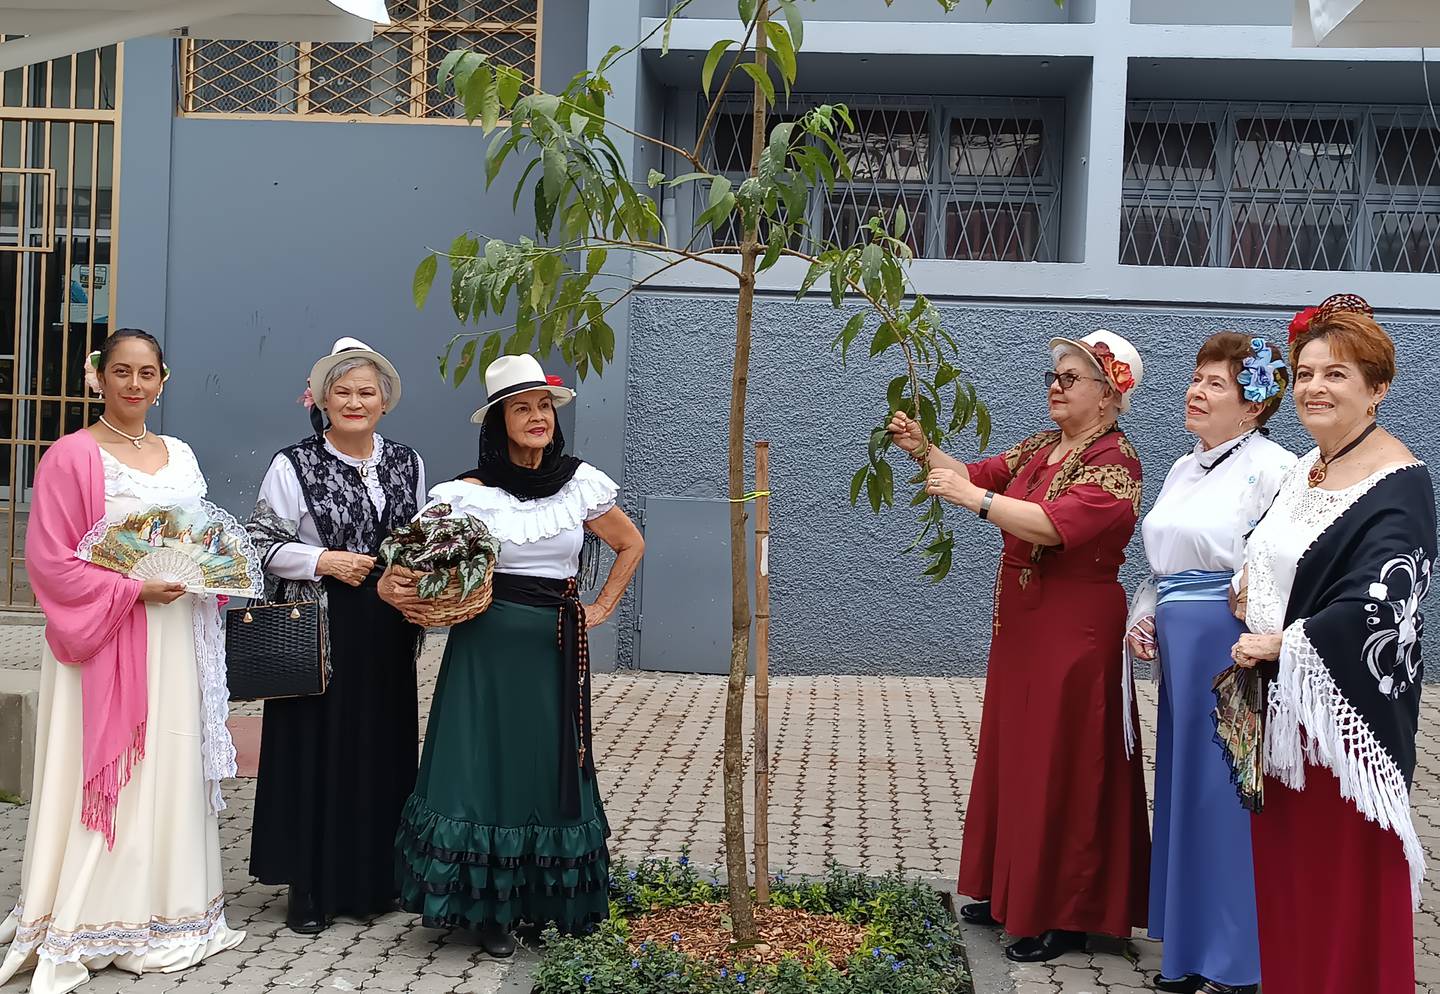 Actividades folclóricas acompañaron la celebración durante este fin de semana en Cartago. Foto: Keyna Calderón.